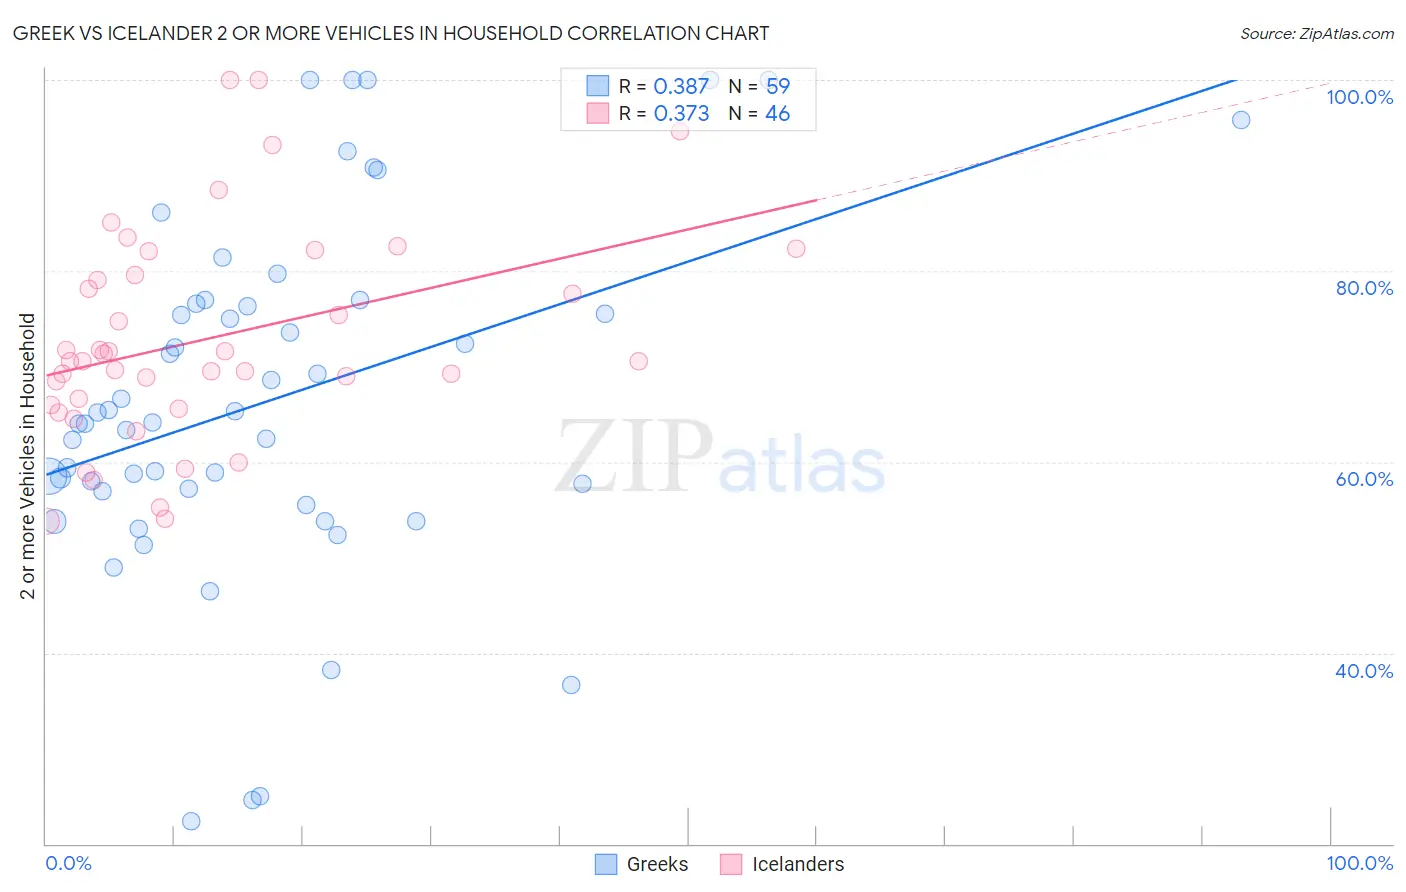 Greek vs Icelander 2 or more Vehicles in Household